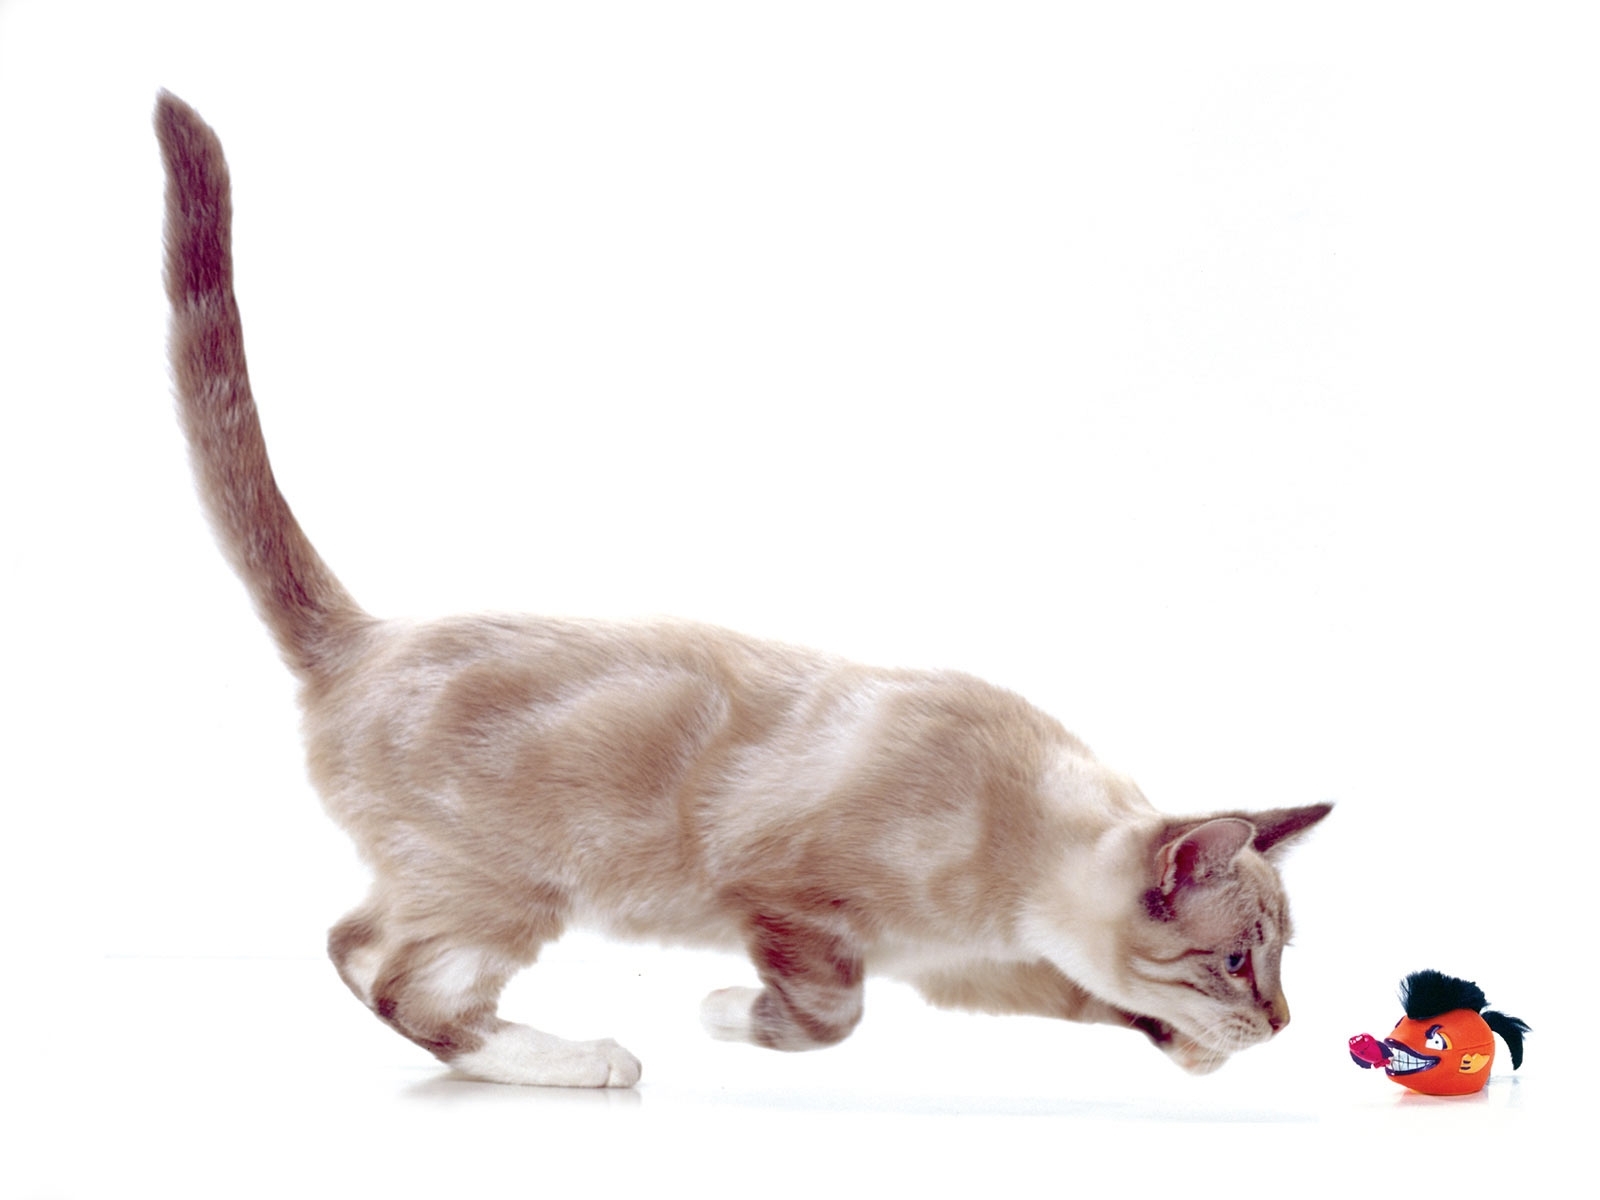 Скачать обои бесплатно Животные, Кошки (Коты Котики), Юмор картинка на рабочий стол ПК